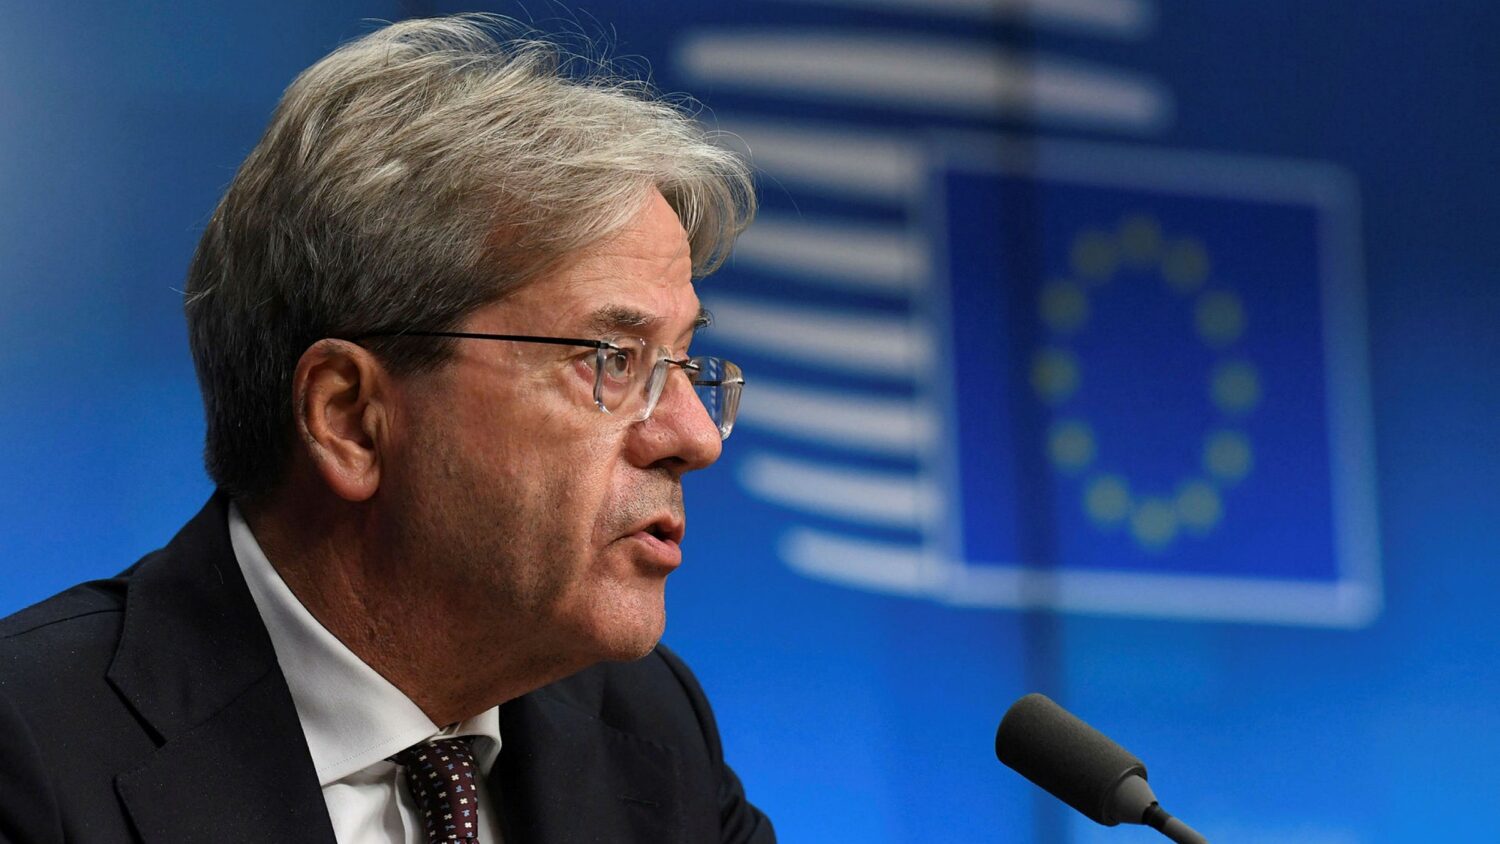 Ξεχωριστά όρια χρέους για κάθε κράτος-μέλος της ΕΕ ζητά ο Τζεντιλόνι